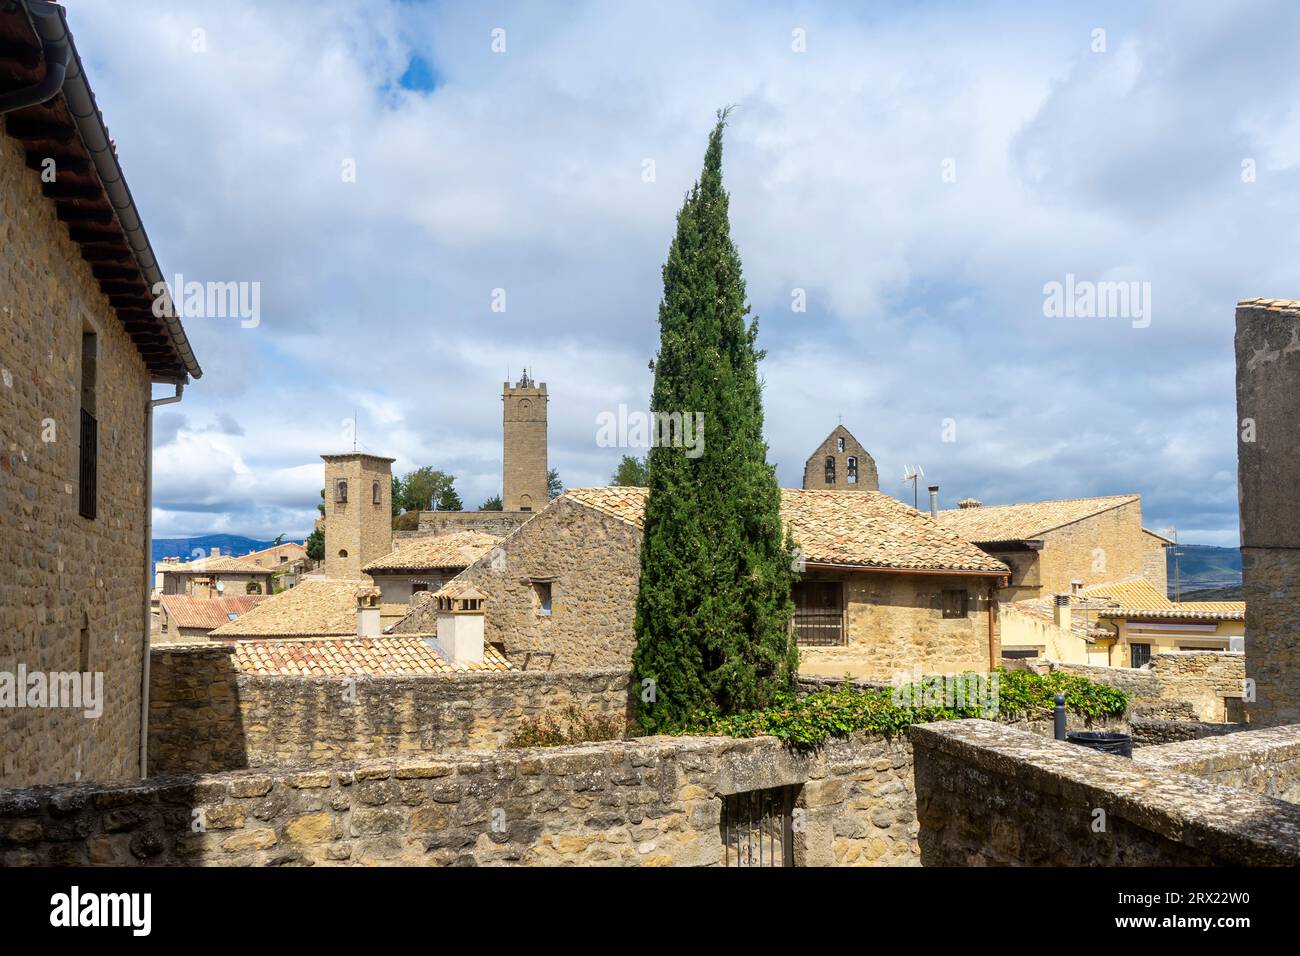 Passeggia per le strade della città medievale di SOS del Rey Catolico, Spagna Foto Stock